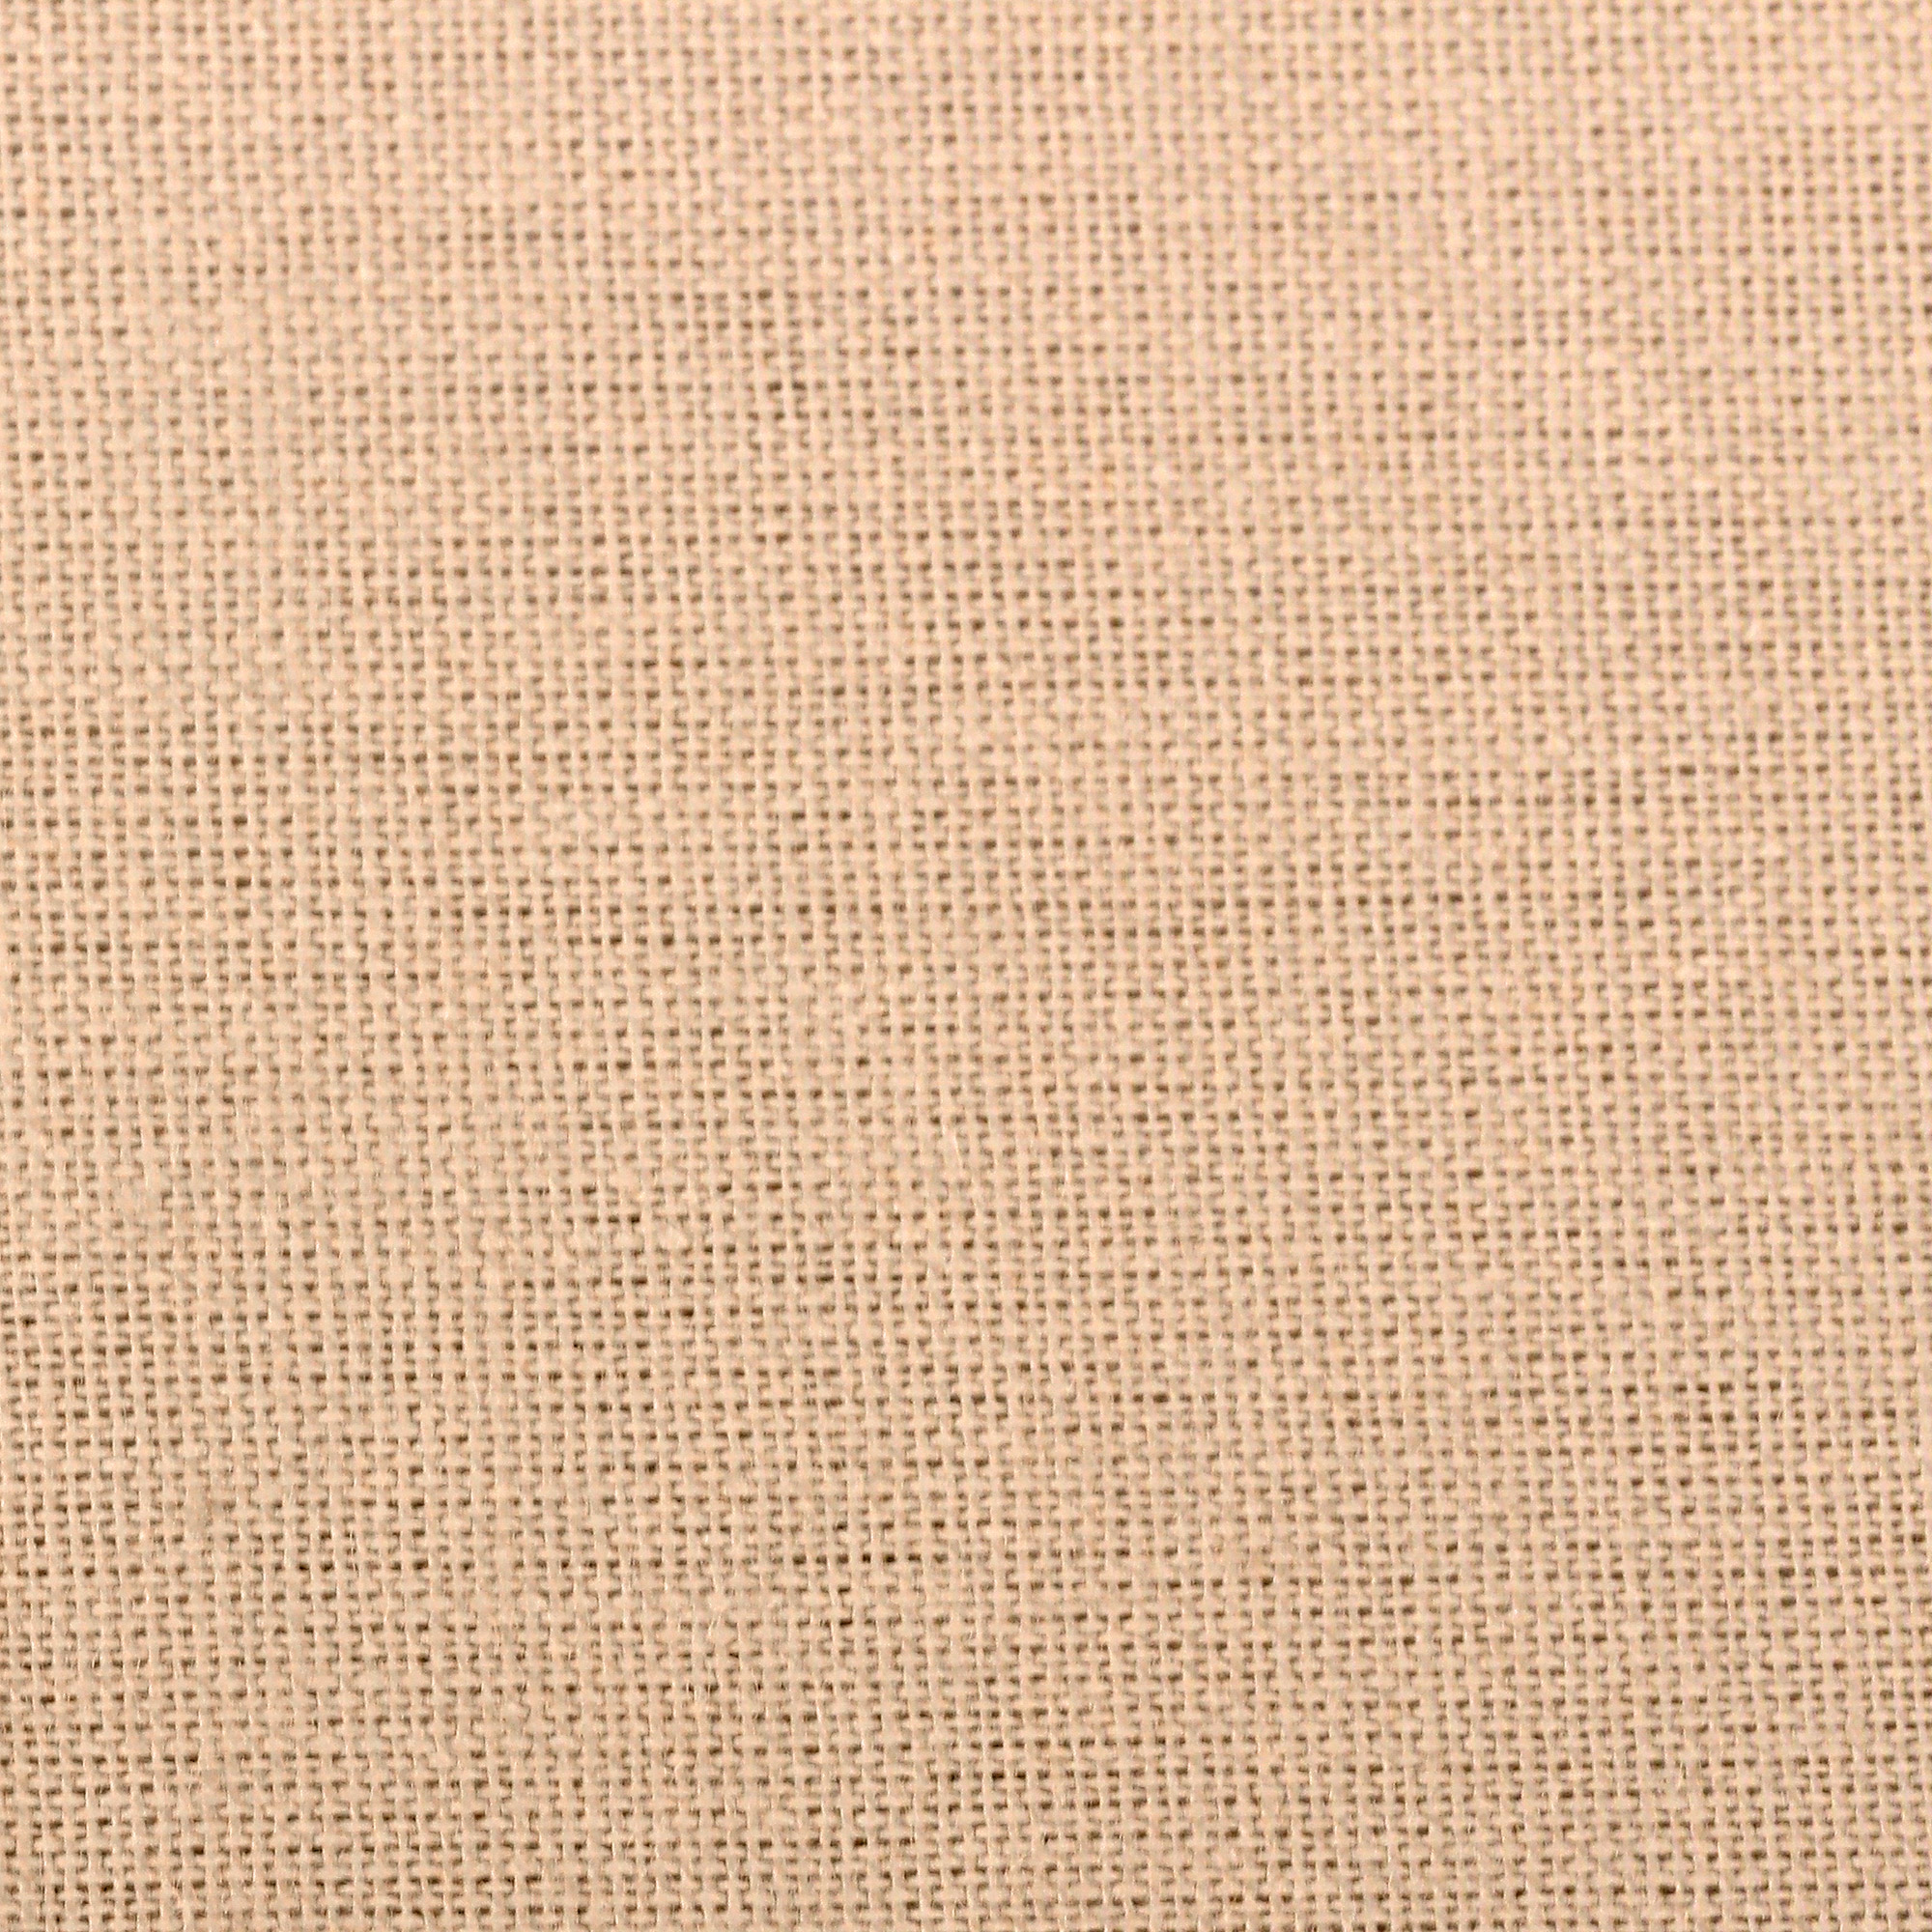 Комплект постельного белья La Besse Ранфорс бежевый Кинг сайз, размер Кинг сайз - фото 4